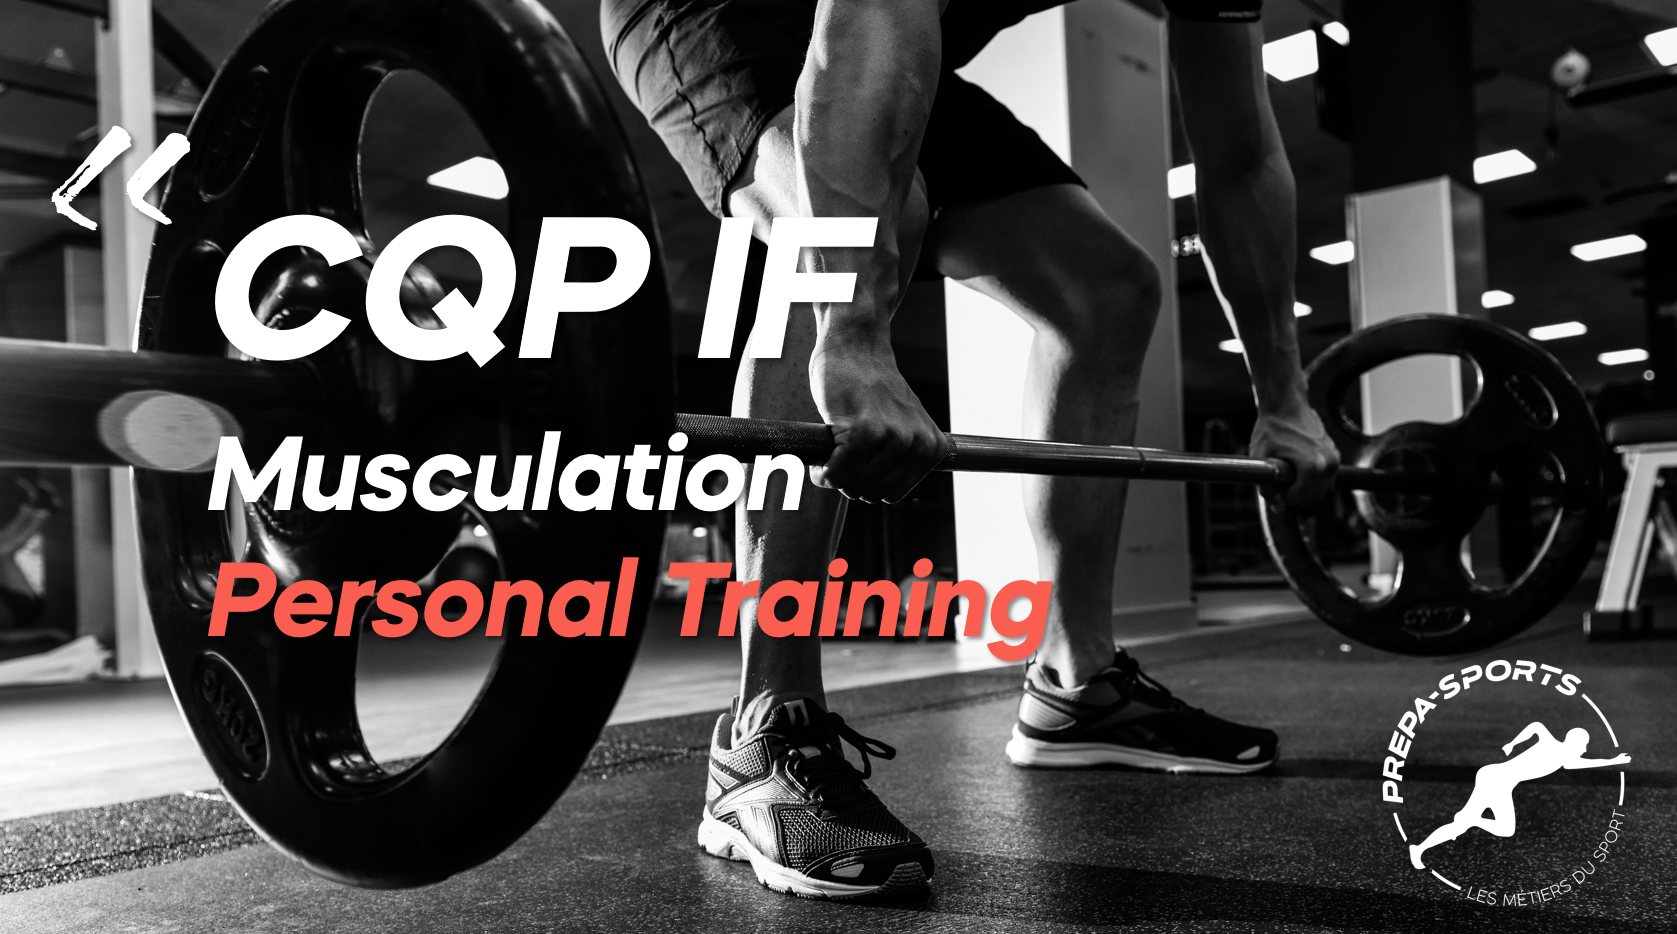 Prépa-News : Nouvelle session CQP IF Personal Training ! 